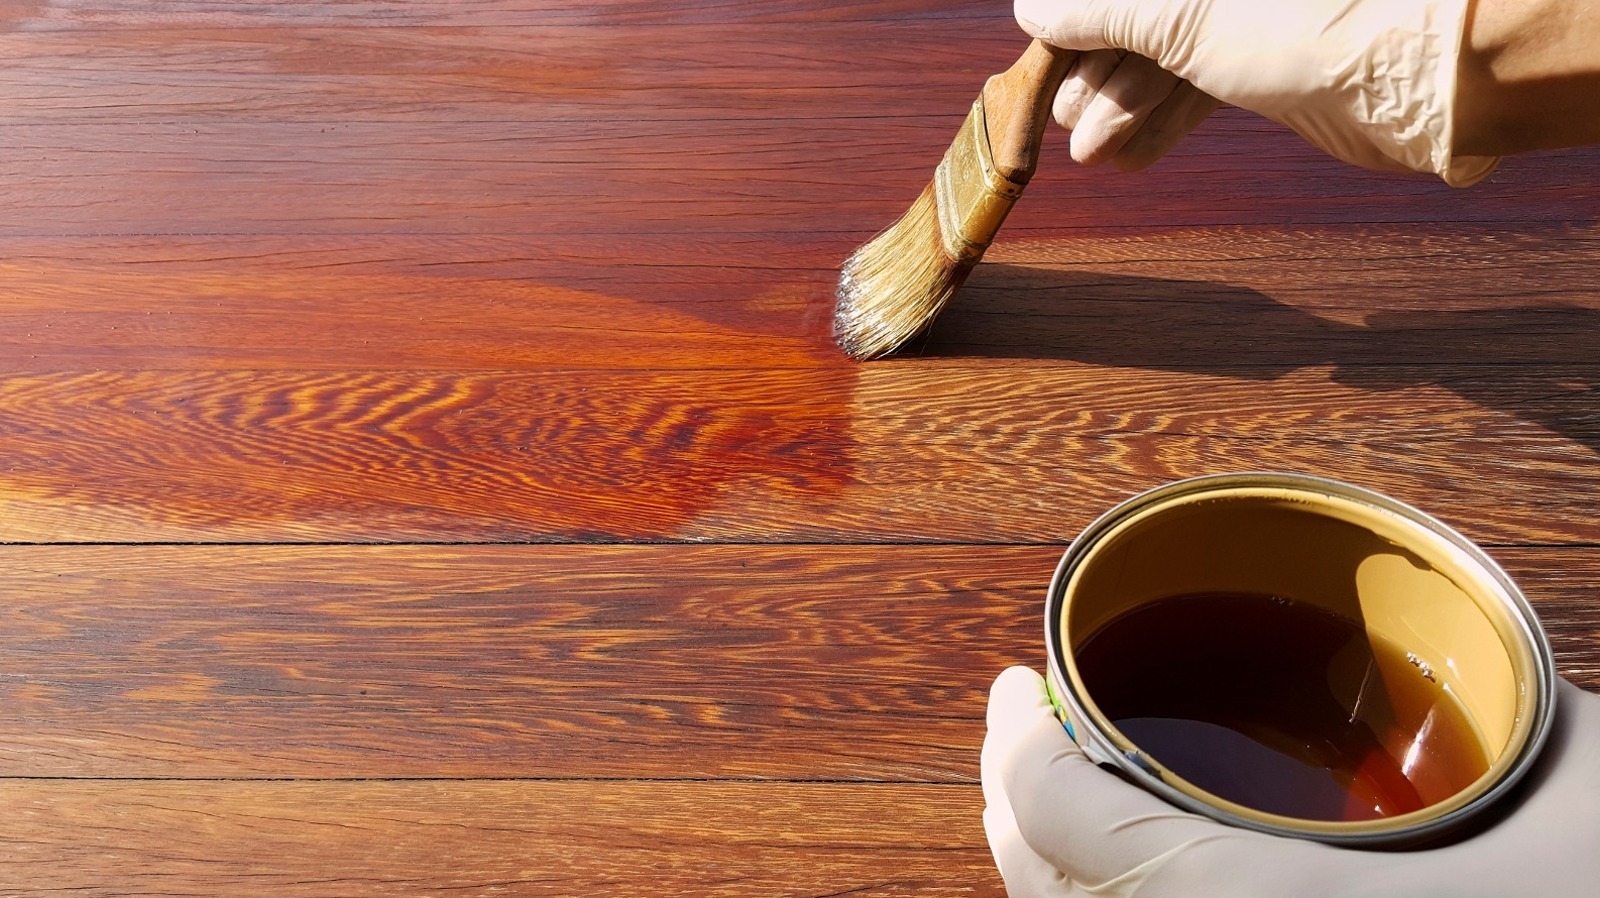 How to Use Linseed Oil on Hardwood Floors